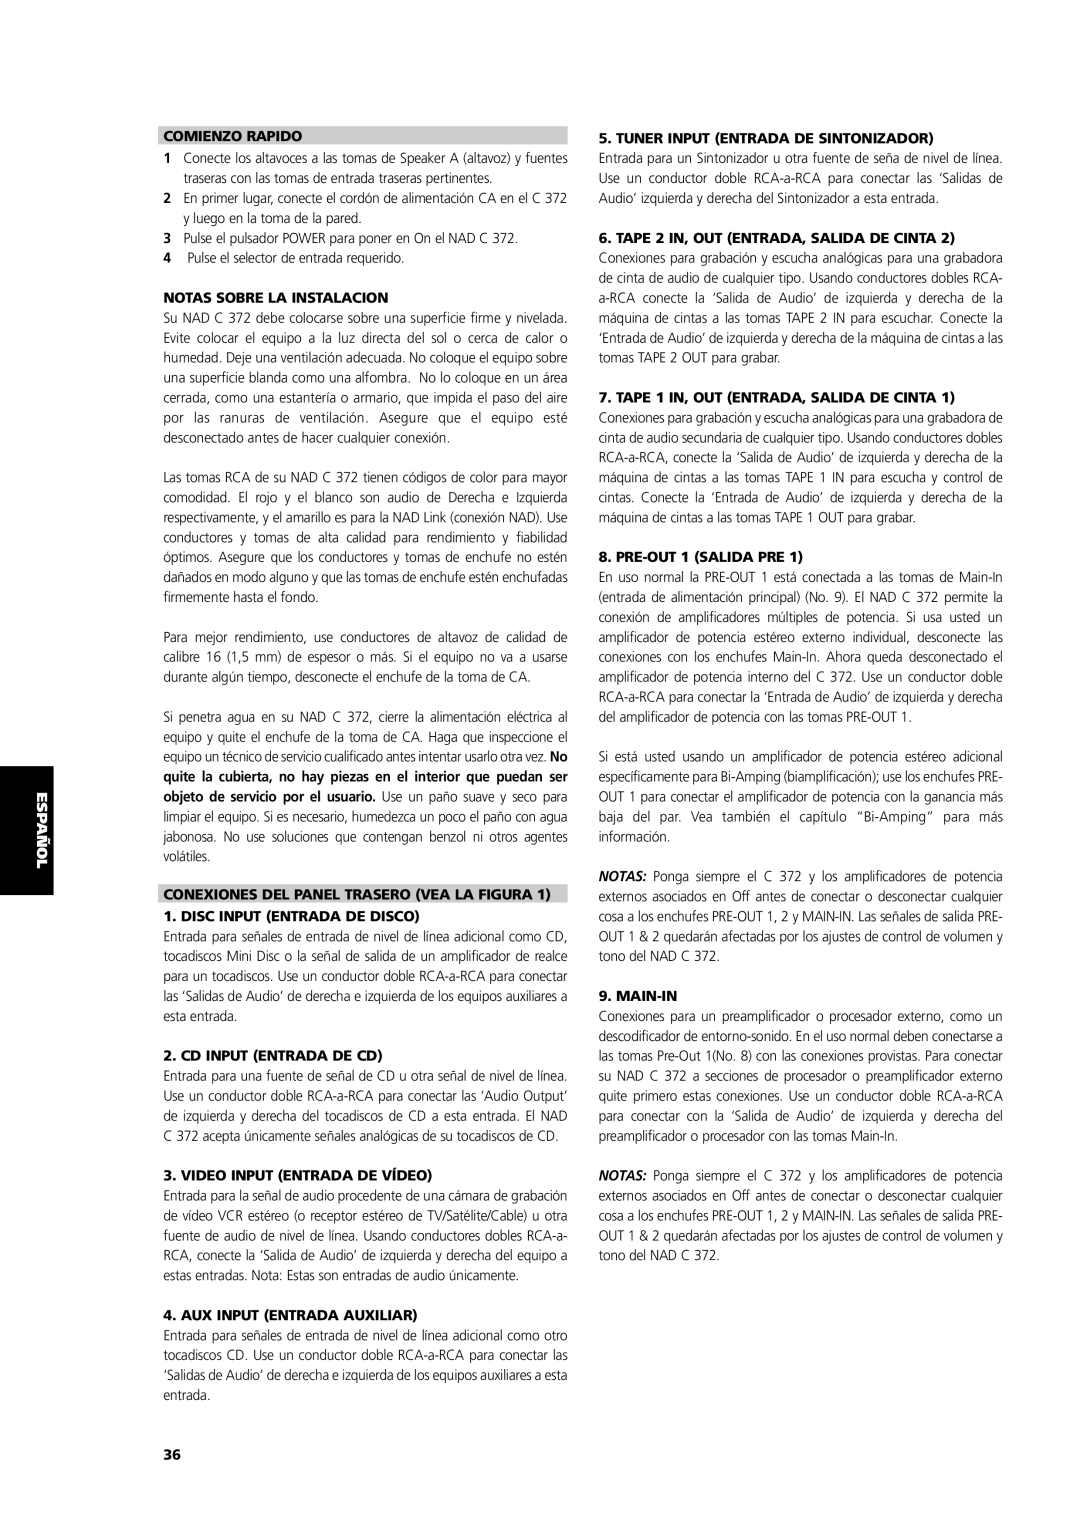 NAD C 372 English Français Deutsch, Comienzo Rapido, Notas Sobre La Instalacion, Disc Input Entrada De Disco, Main-In 